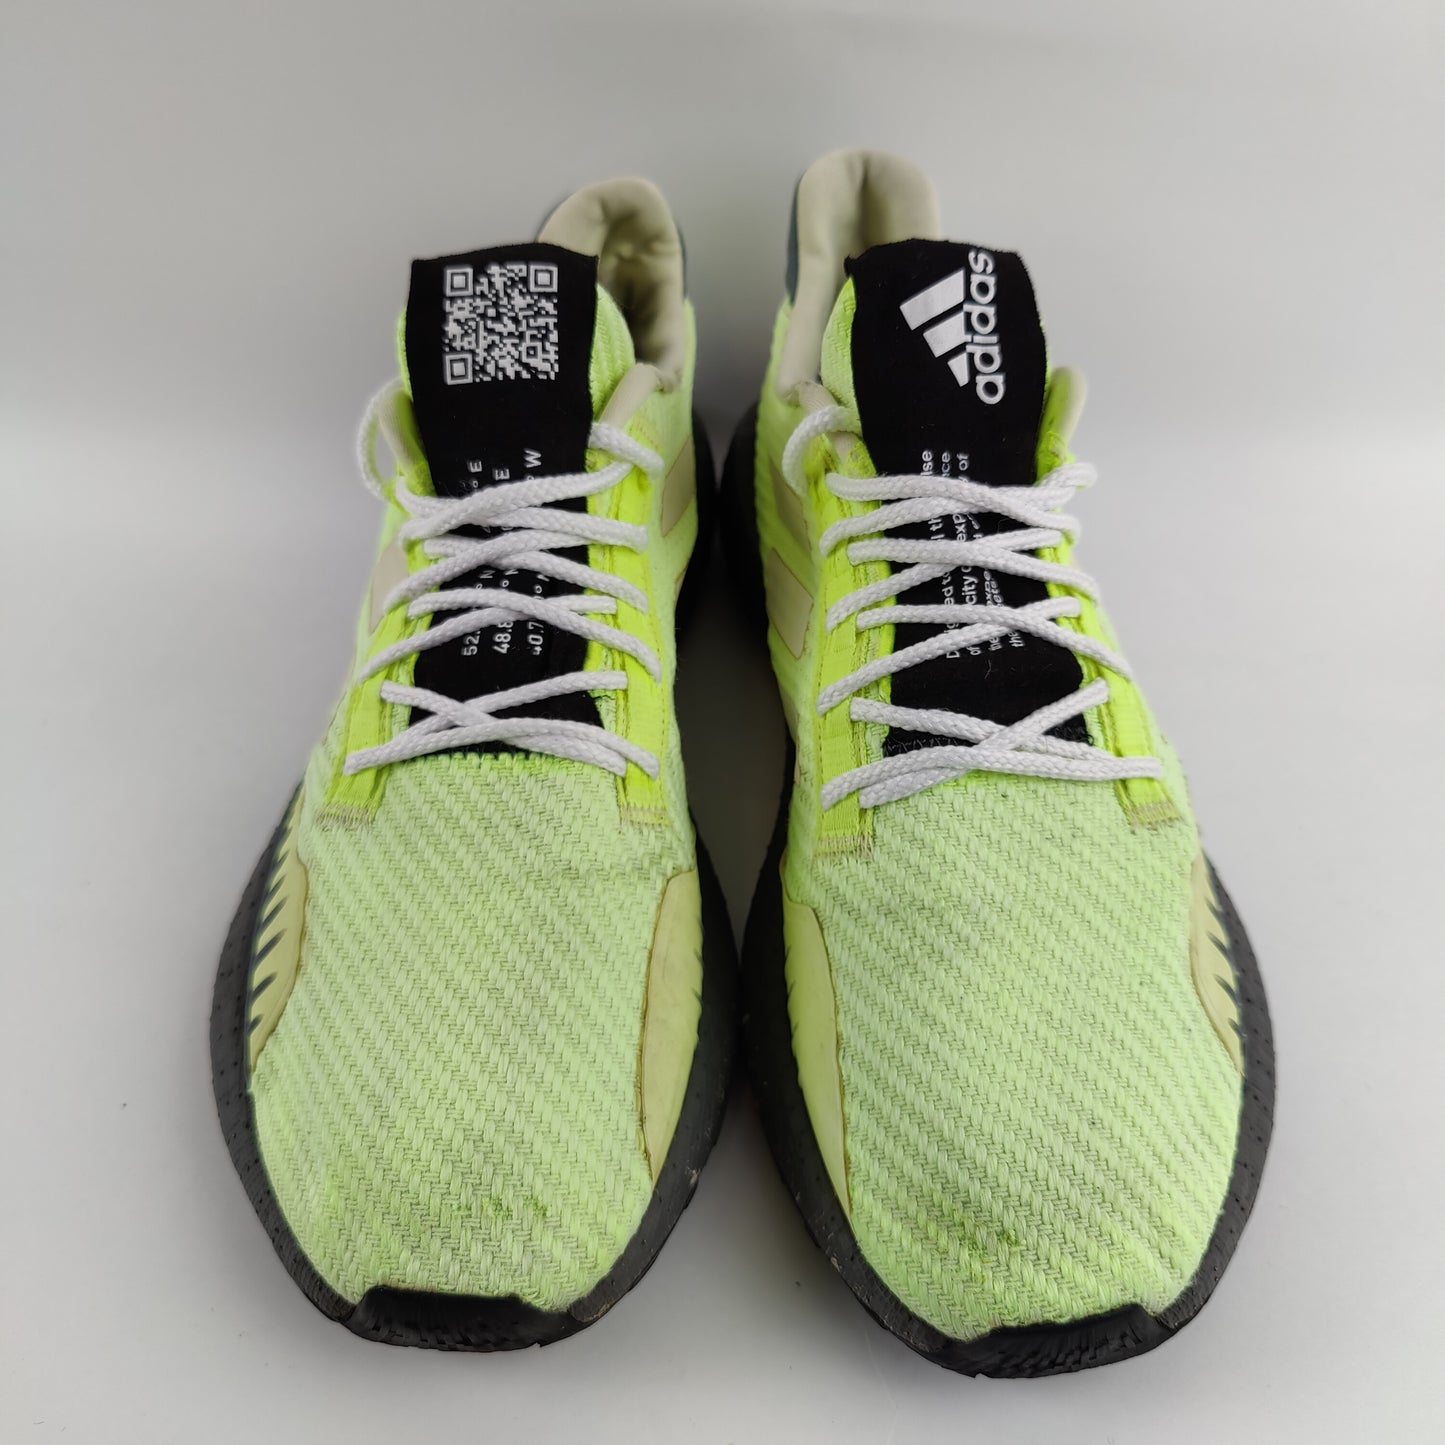 Adidas Pulseboost - Green - 4403002